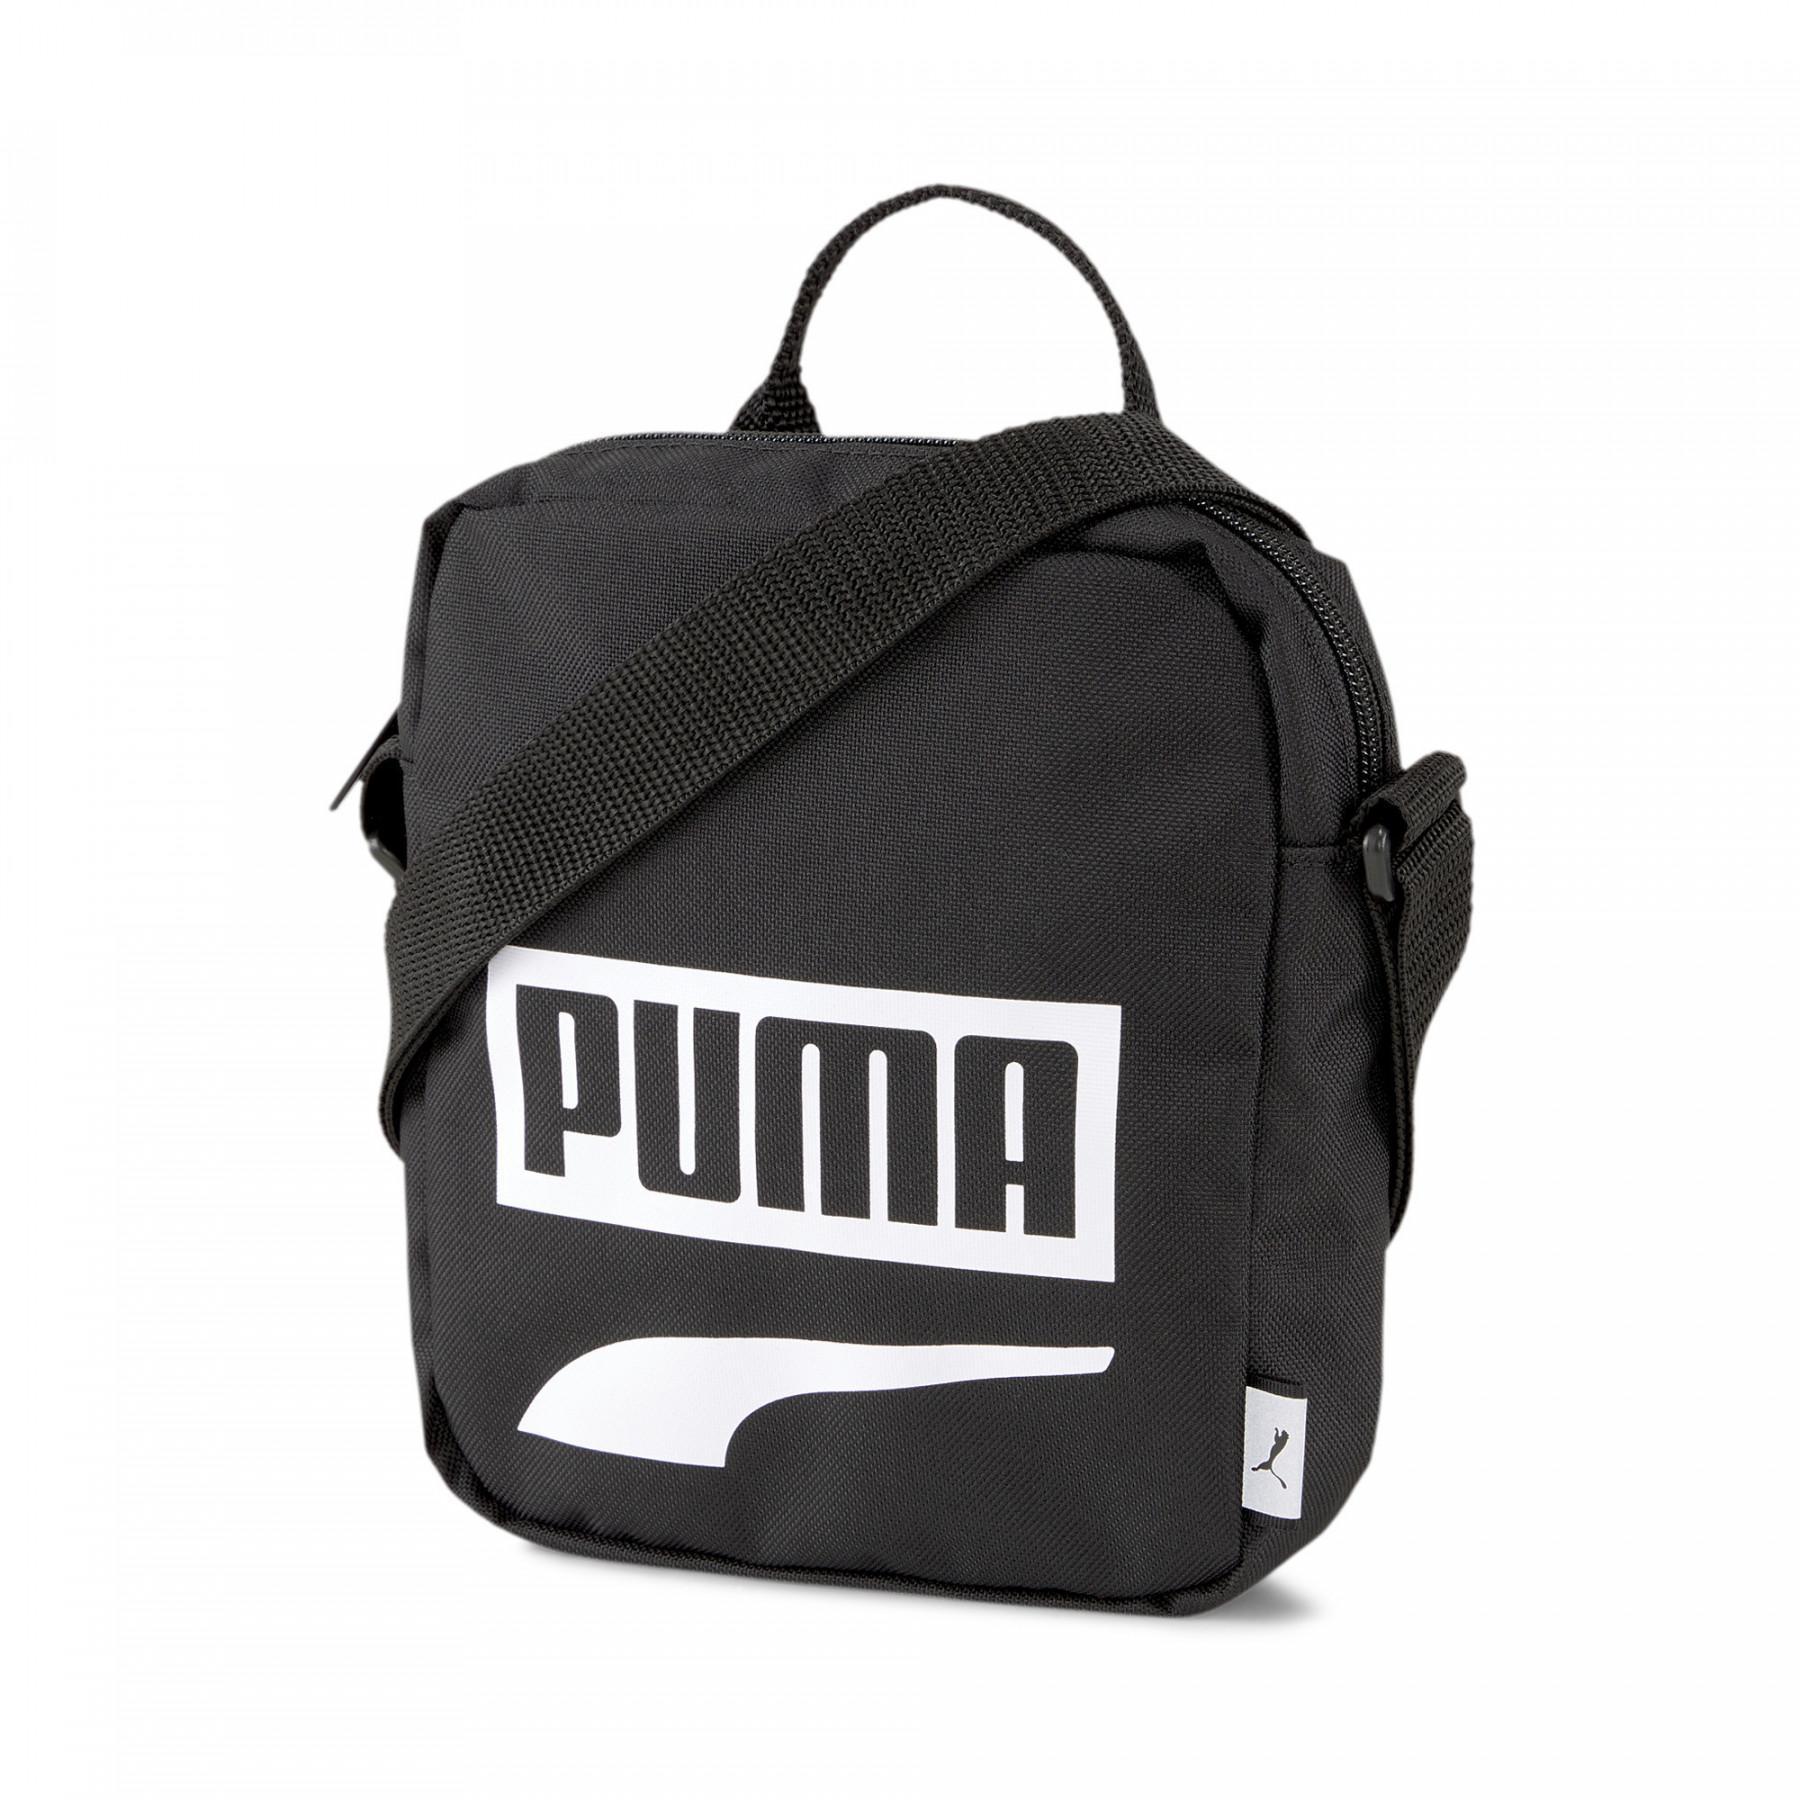 Sac Puma Plus Portable II